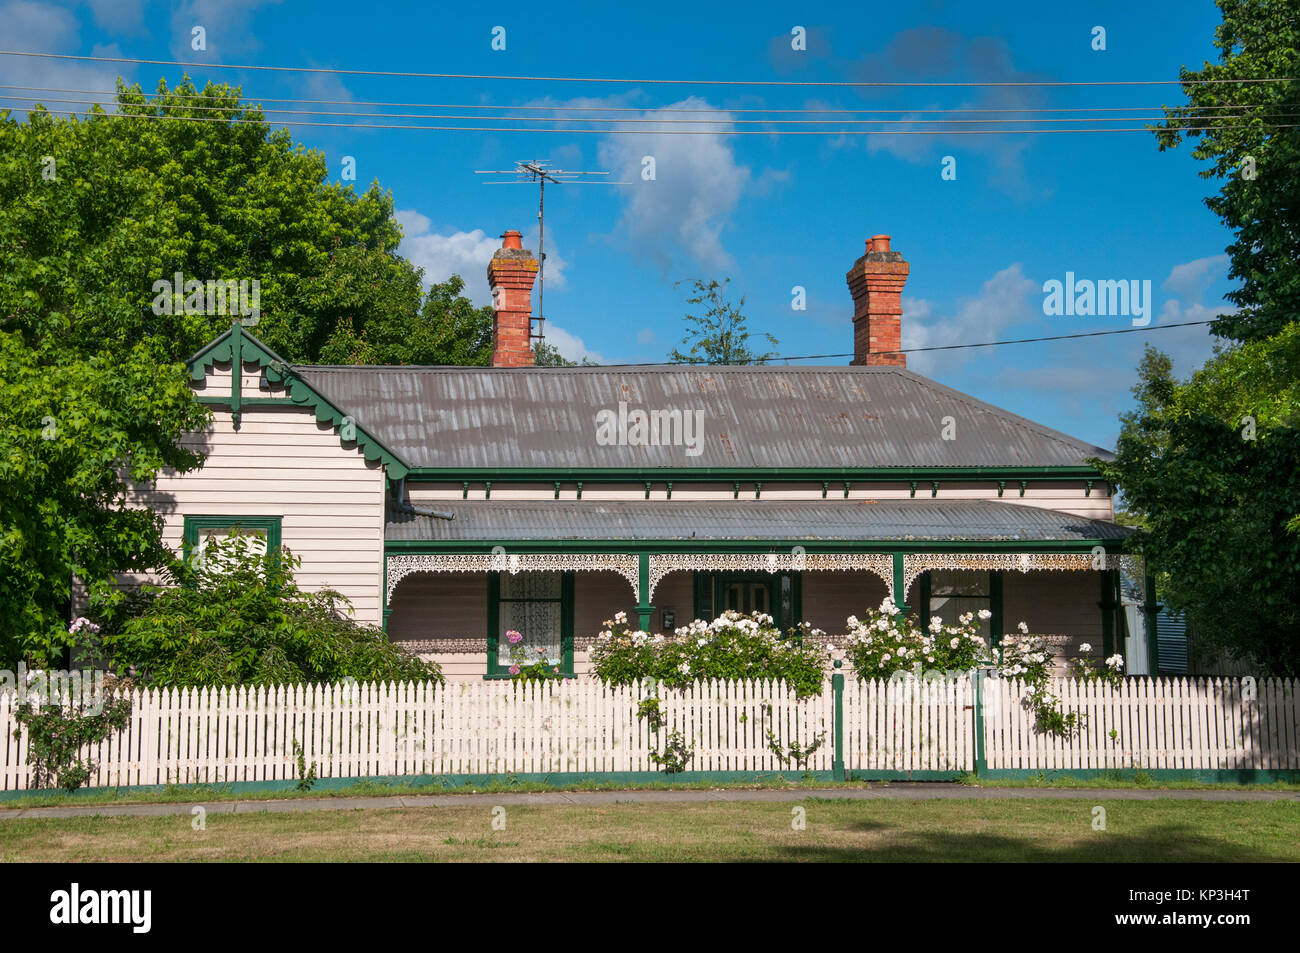 La fin de l'ère victorienne en maison de campagne Ballan, Victoria, Australie occidentale Banque D'Images